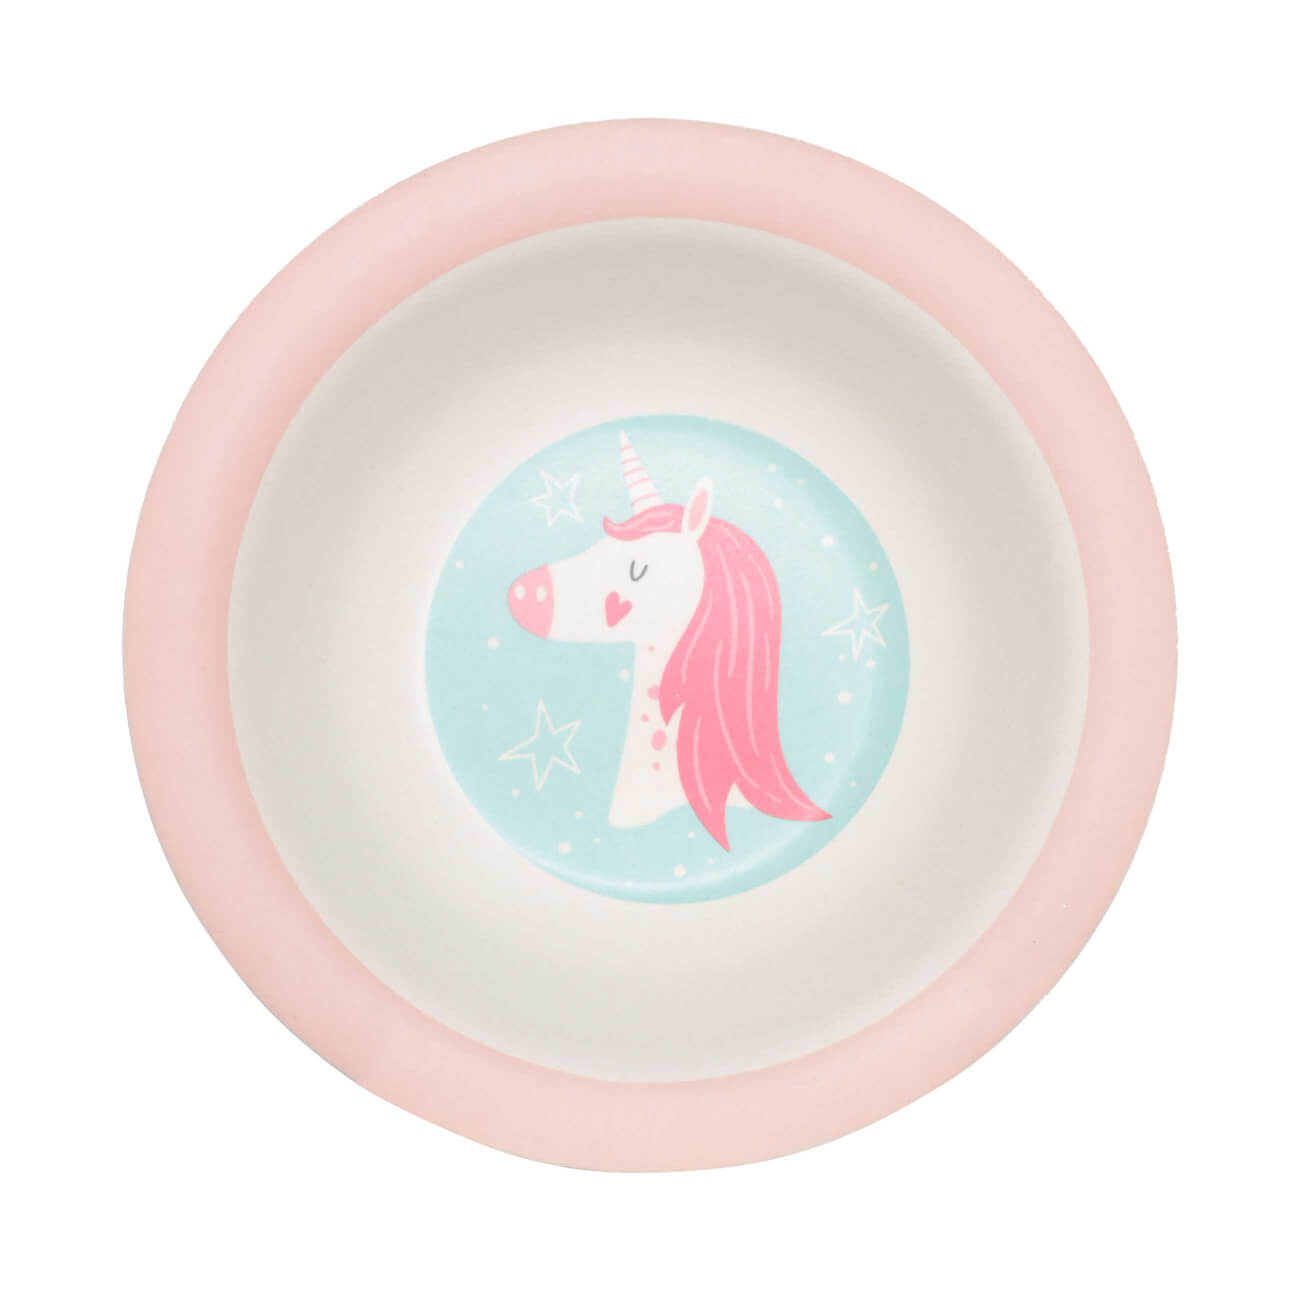 Тарелка суповая, детская, 15 см, бамбук, розово-мятная, Единорог и звезды, Unicorn изображение № 1